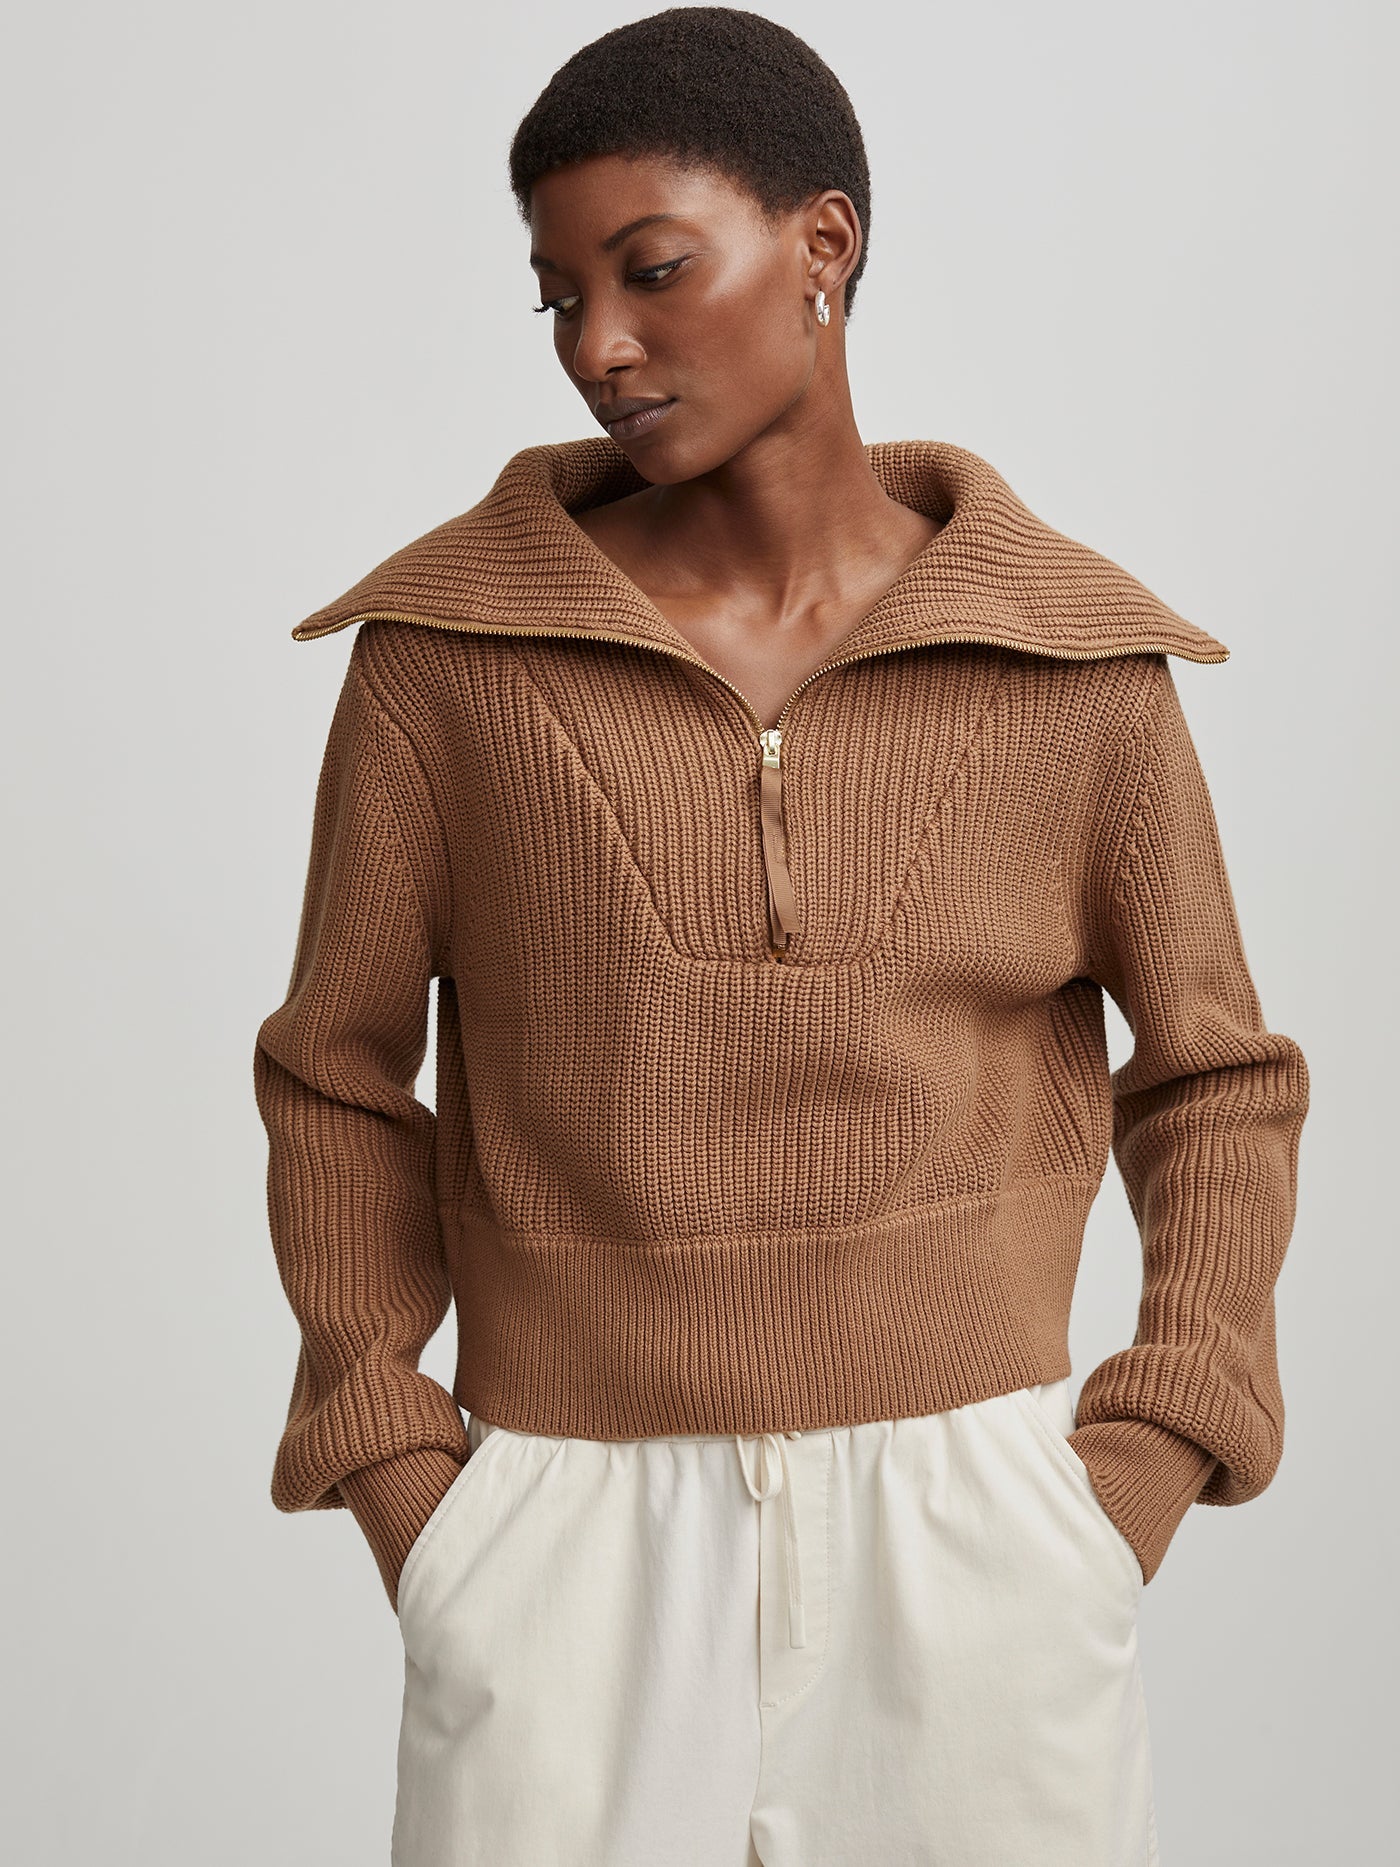 Mentone Half-Zip Knit Pullover | Varley US